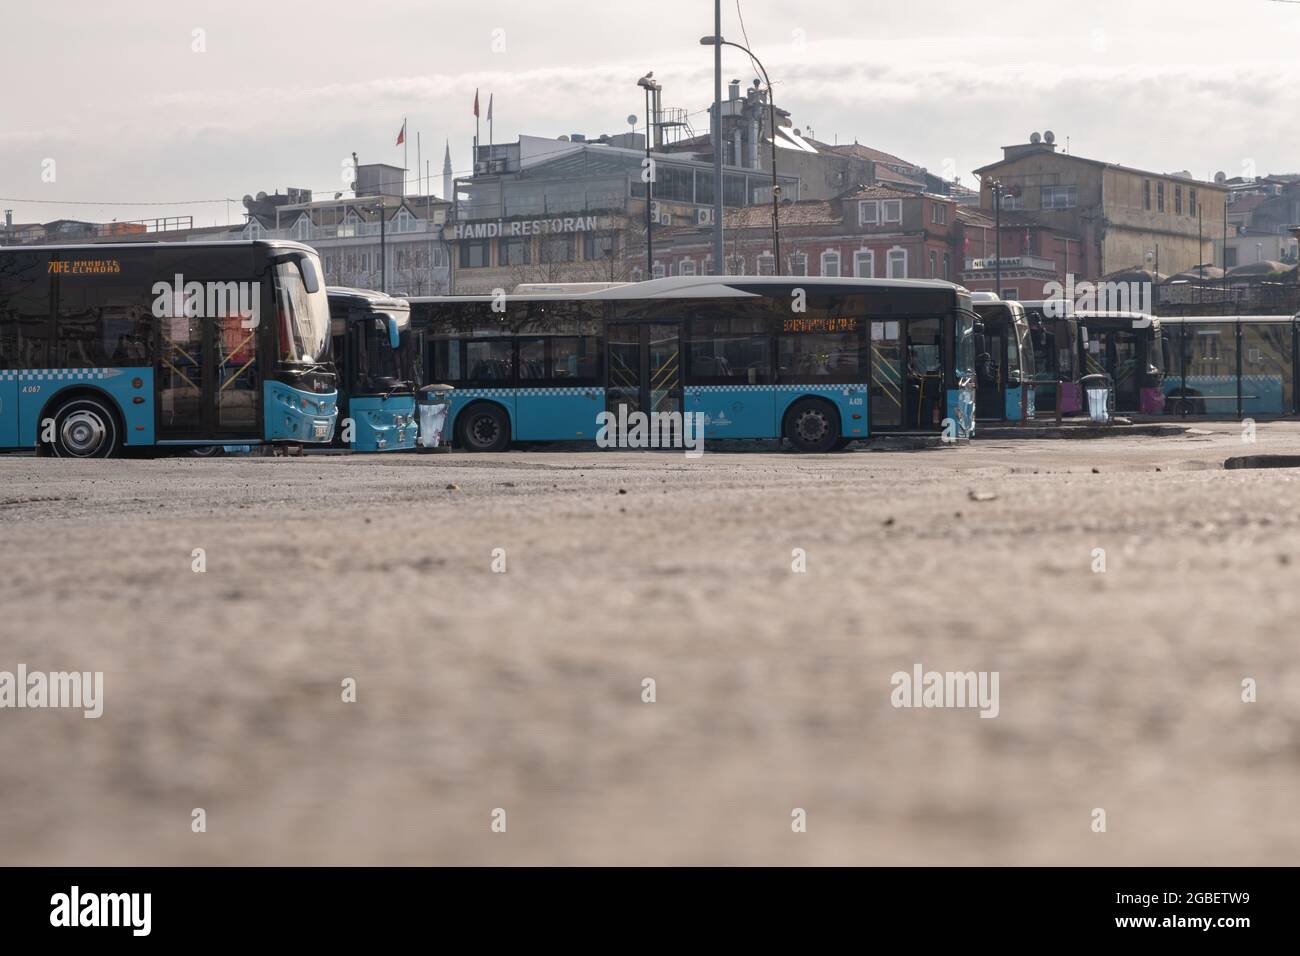 Eminonu, Istanbul, Turchia - 02.18.2021: Basso angolo di deposito degli autobus di Eminonu e in attesa di autobus per l'orario di partenza per muoversi con spazio copia Foto Stock